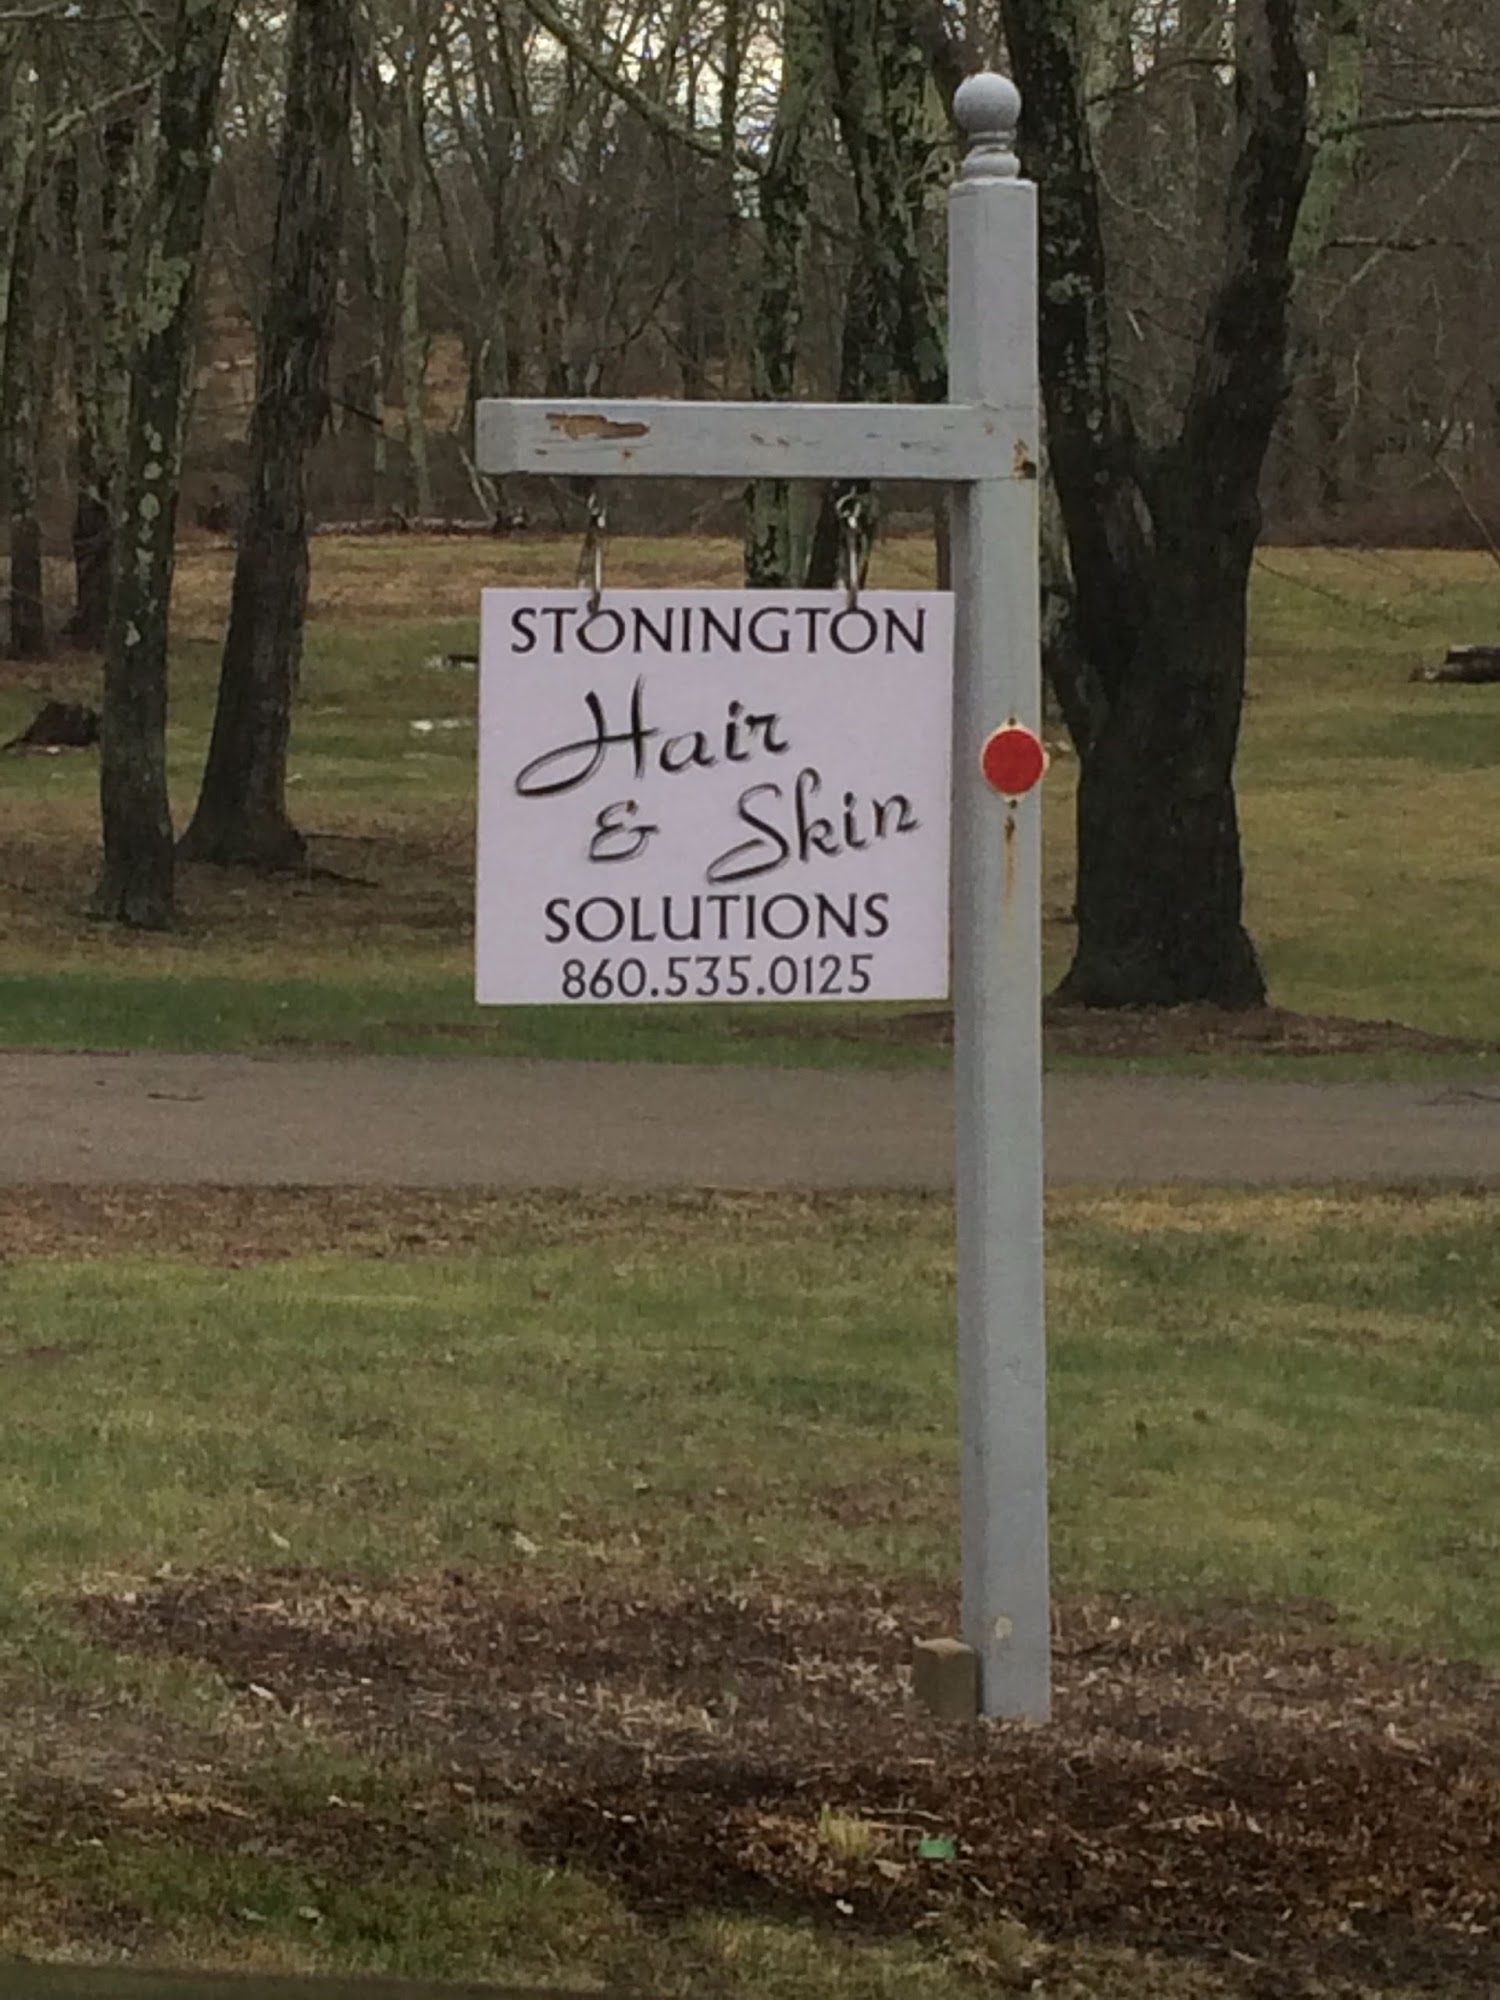 Stonington Hair & Skin Solutions 715 New London Turnpike, Stonington Connecticut 06378